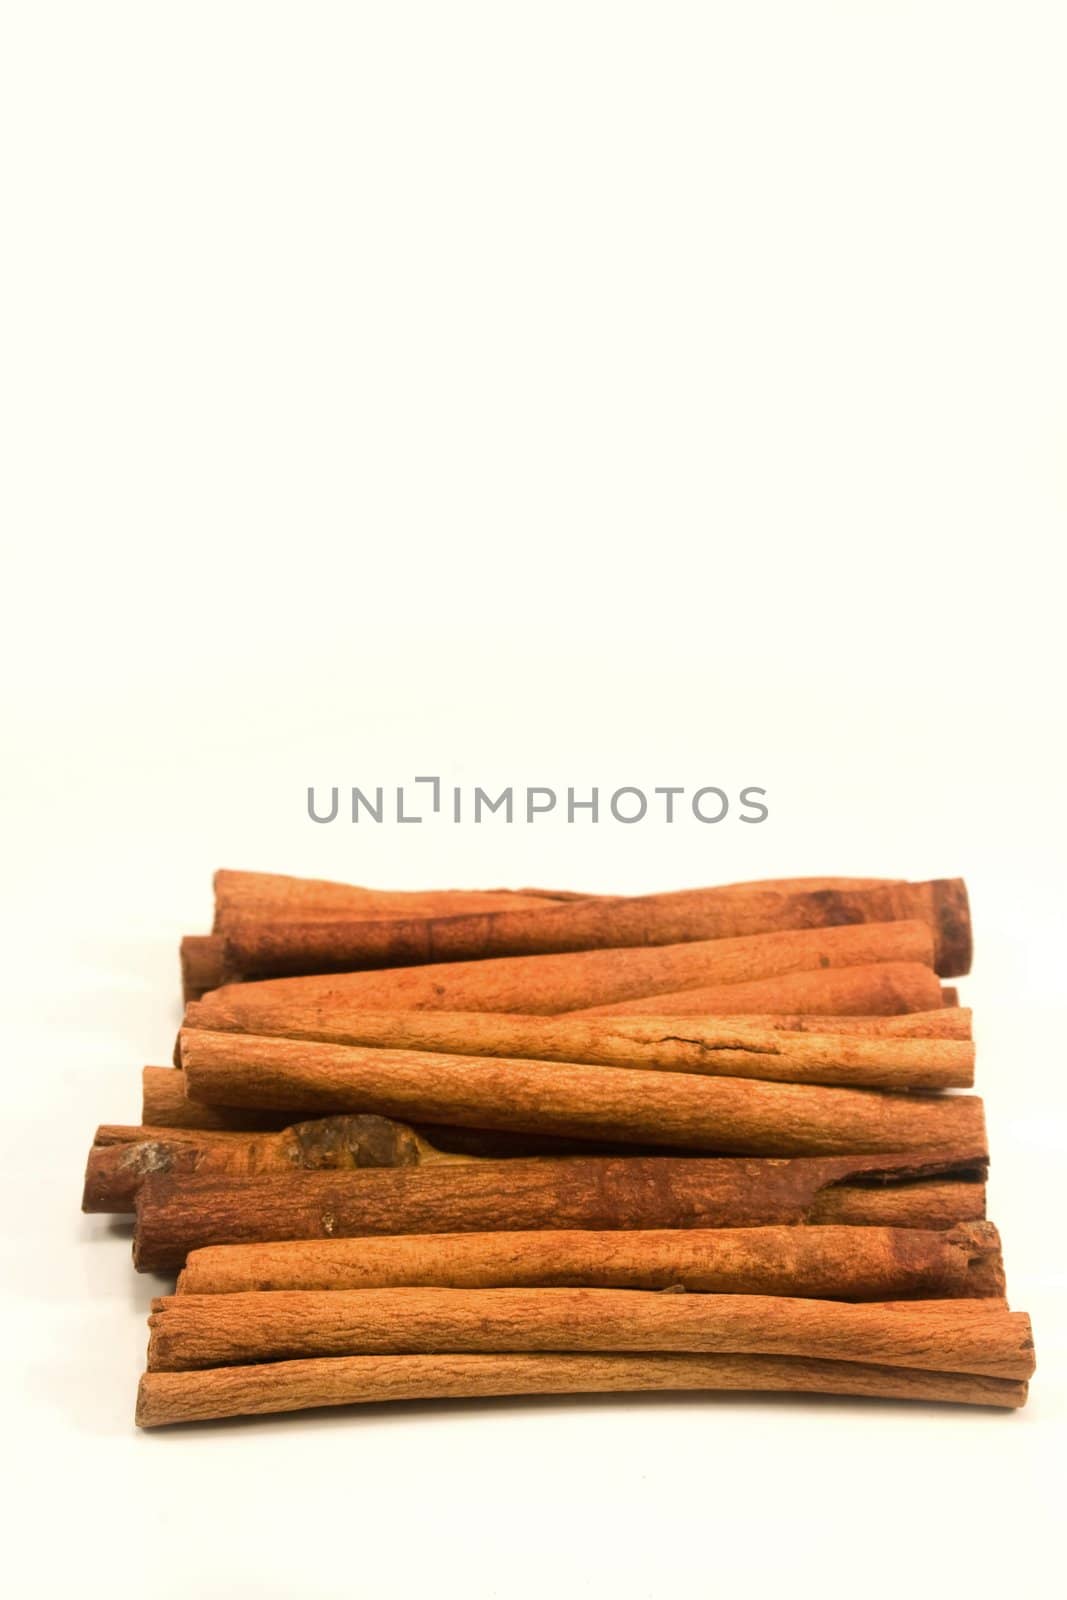 Cinnamon by timscottrom